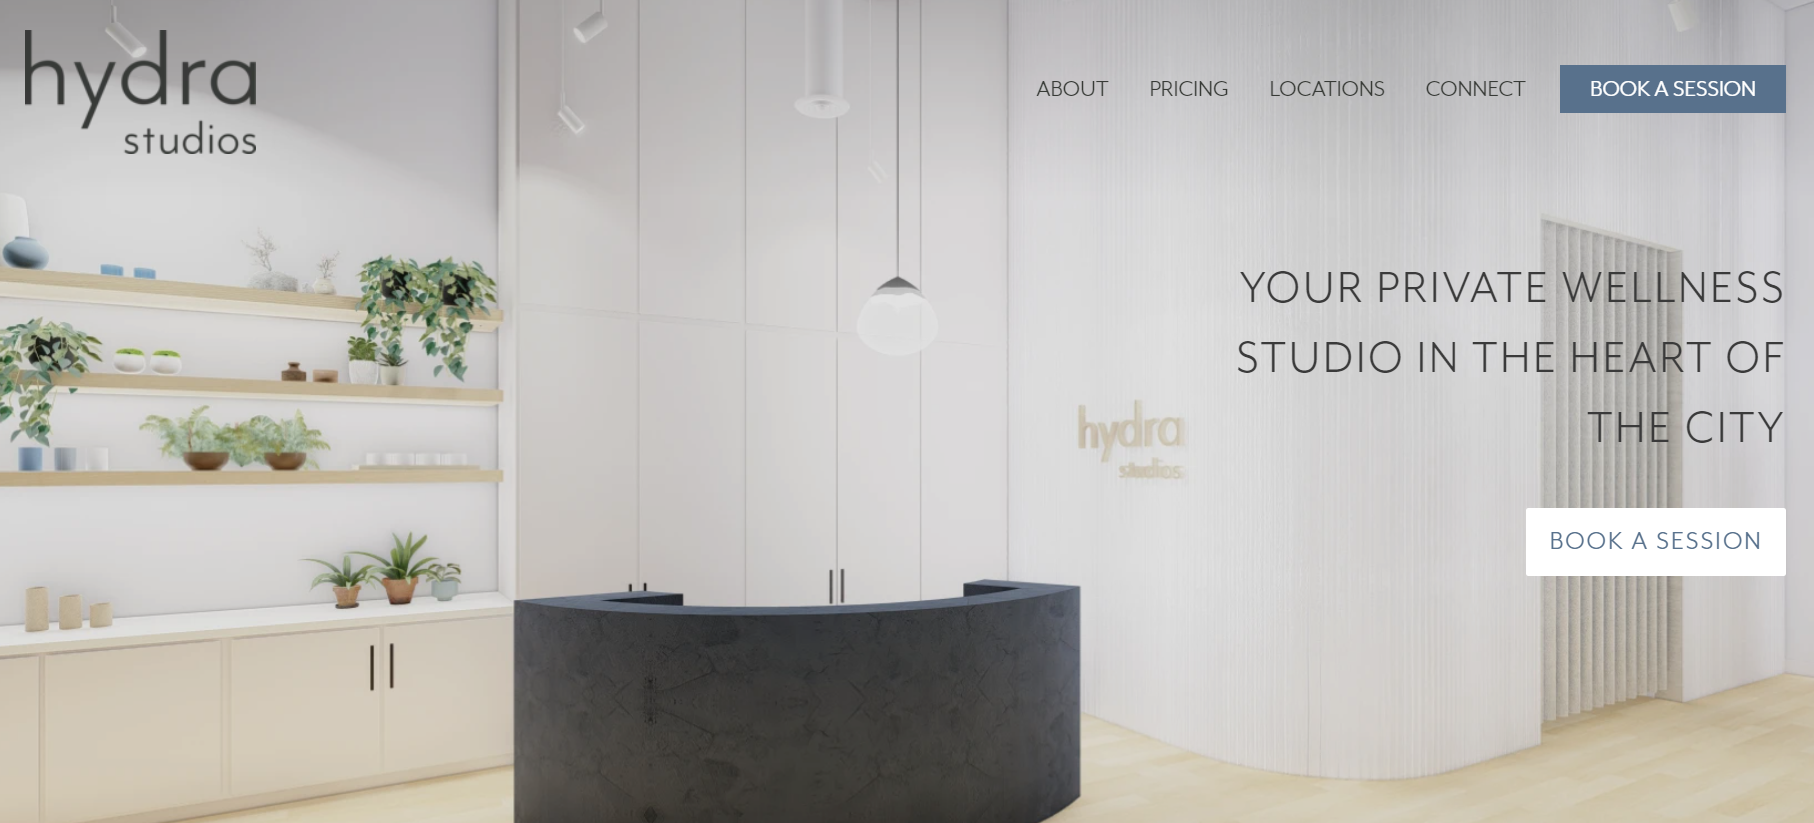 帮企业创建“高盛”水平的内部健身房！Hydra Studios 完成380万美元种子轮融资